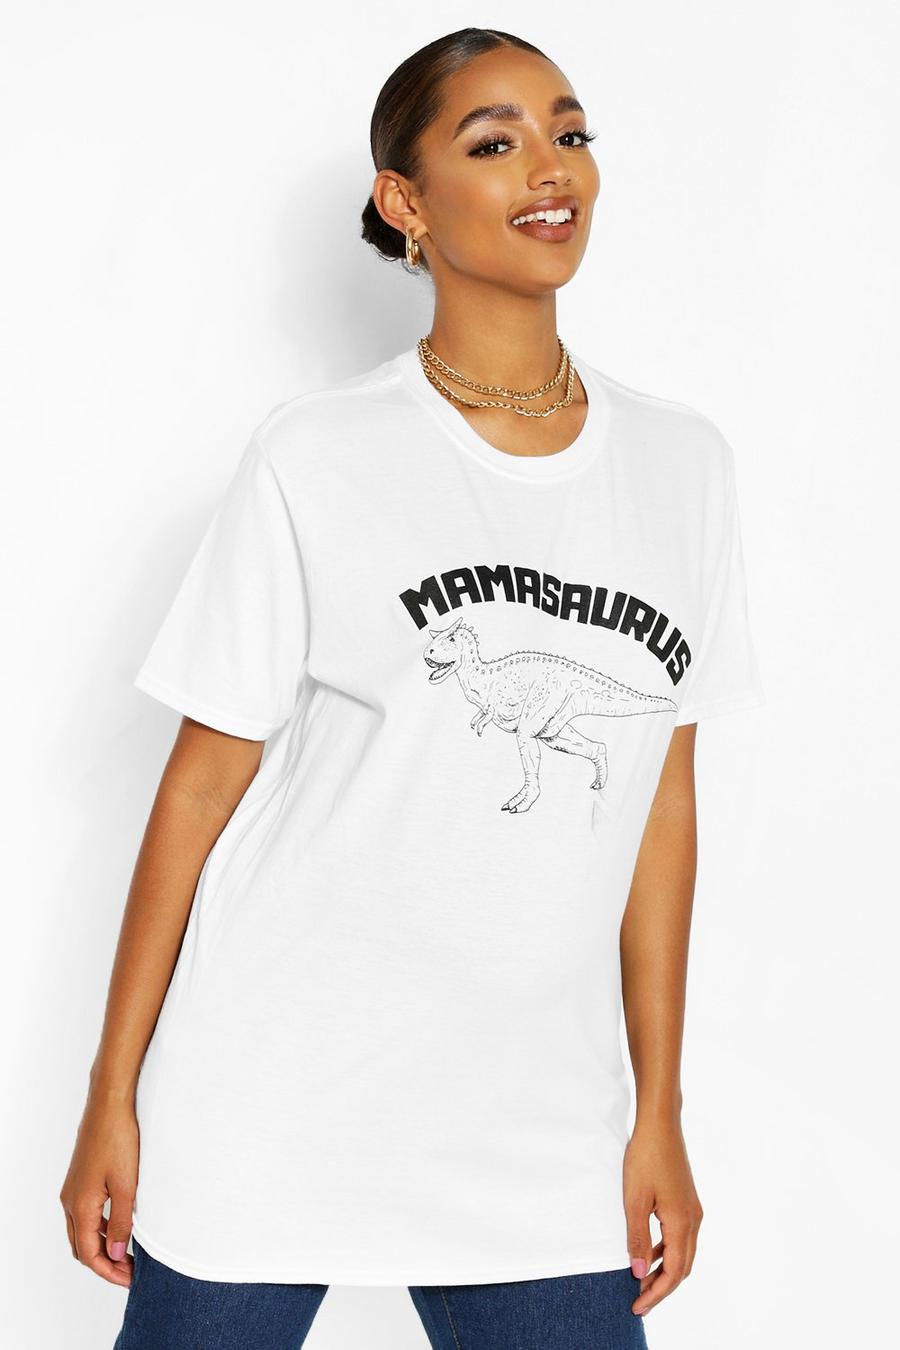 Camiseta con eslogan “Mamasaurus” Ropa premamá, Blanco image number 1